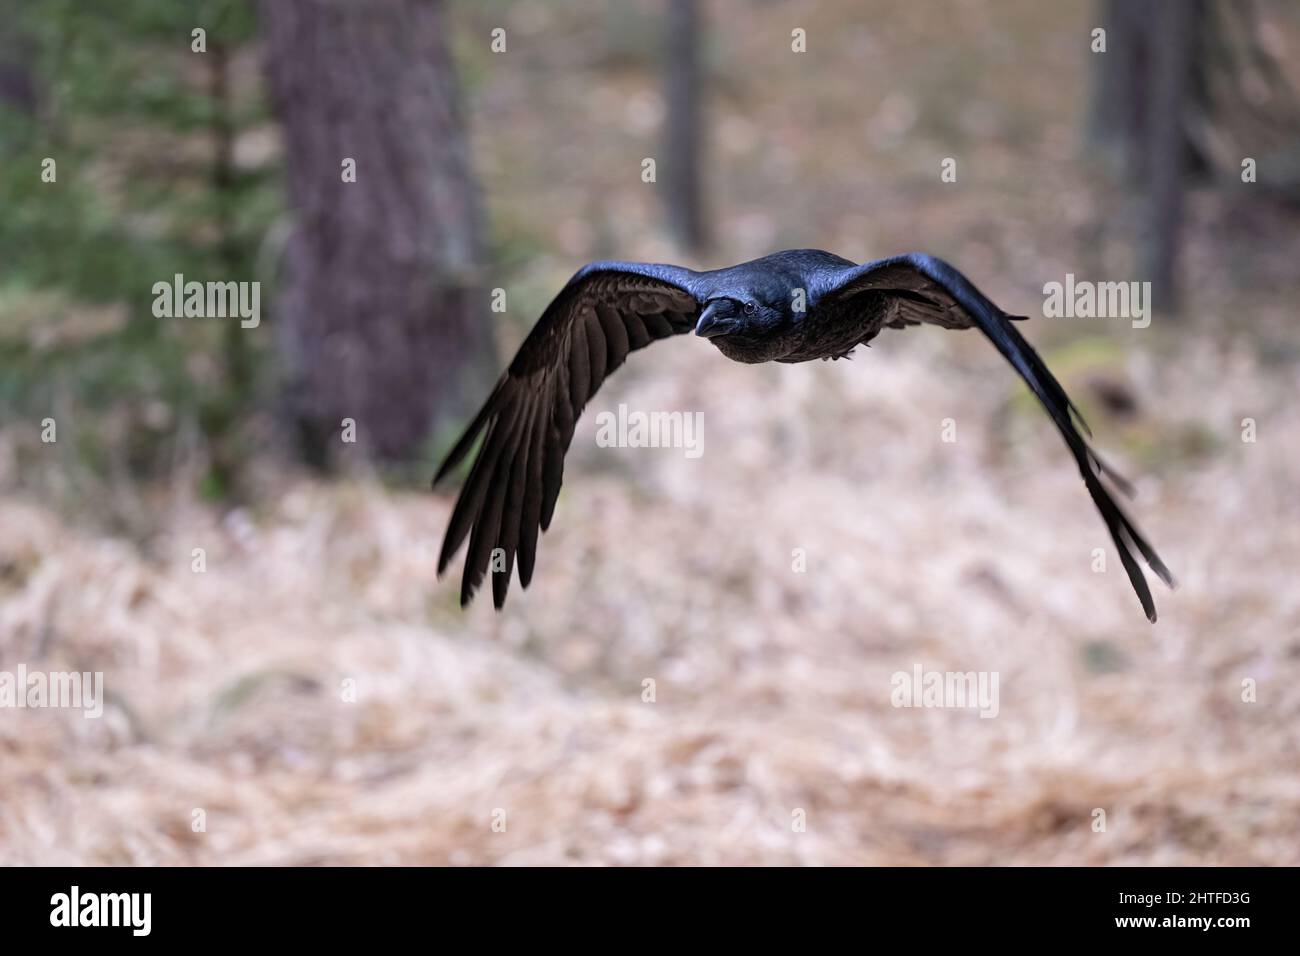 Le grand corbeau vole à travers la forêt à la recherche de nourriture. Banque D'Images